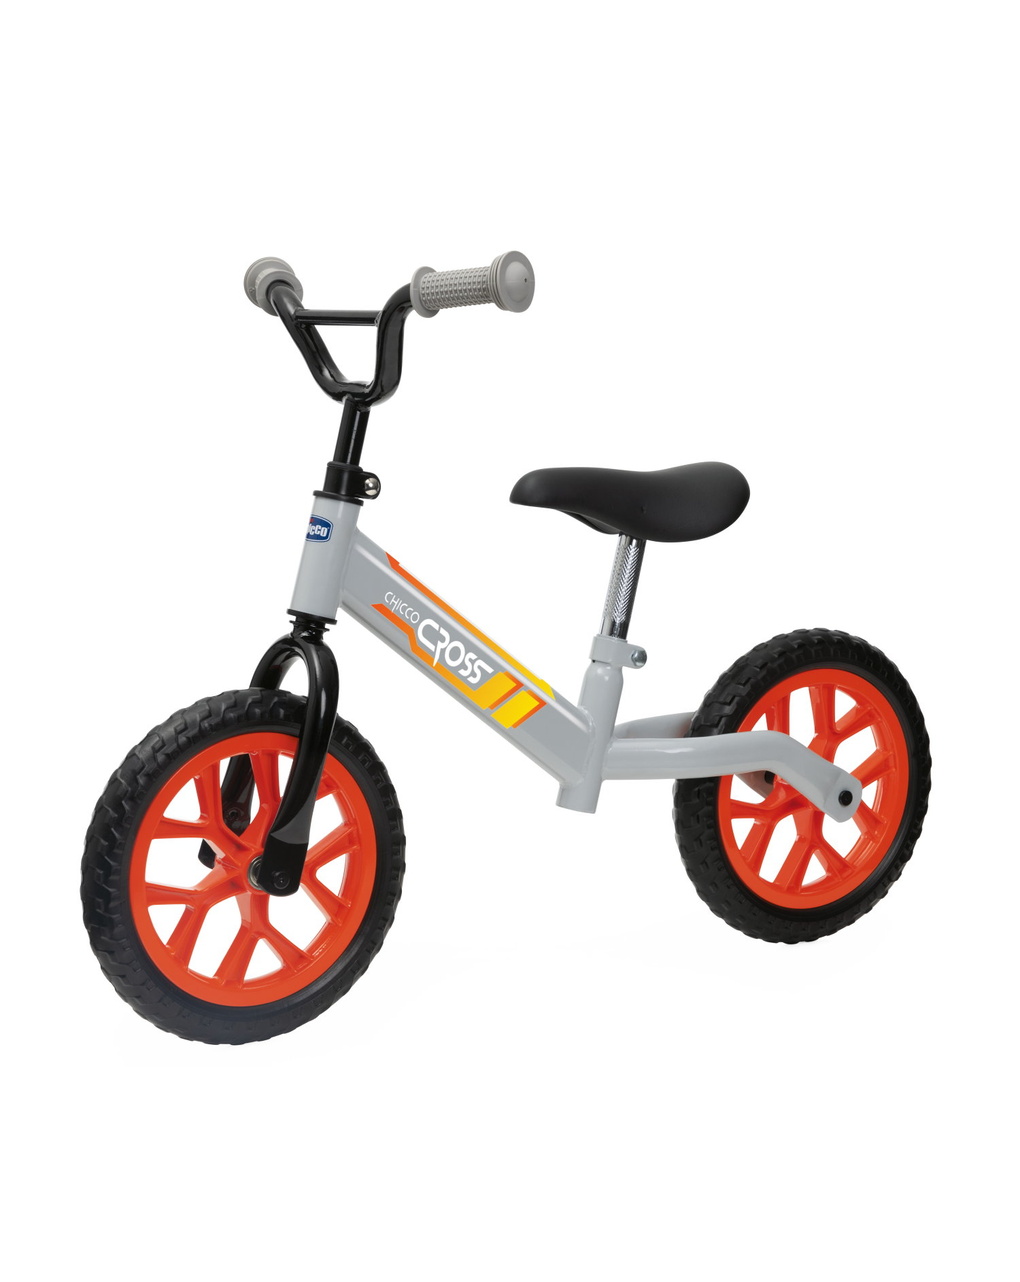 Bicicleta de equilíbrio cross 2-5 anos - chicco - Chicco